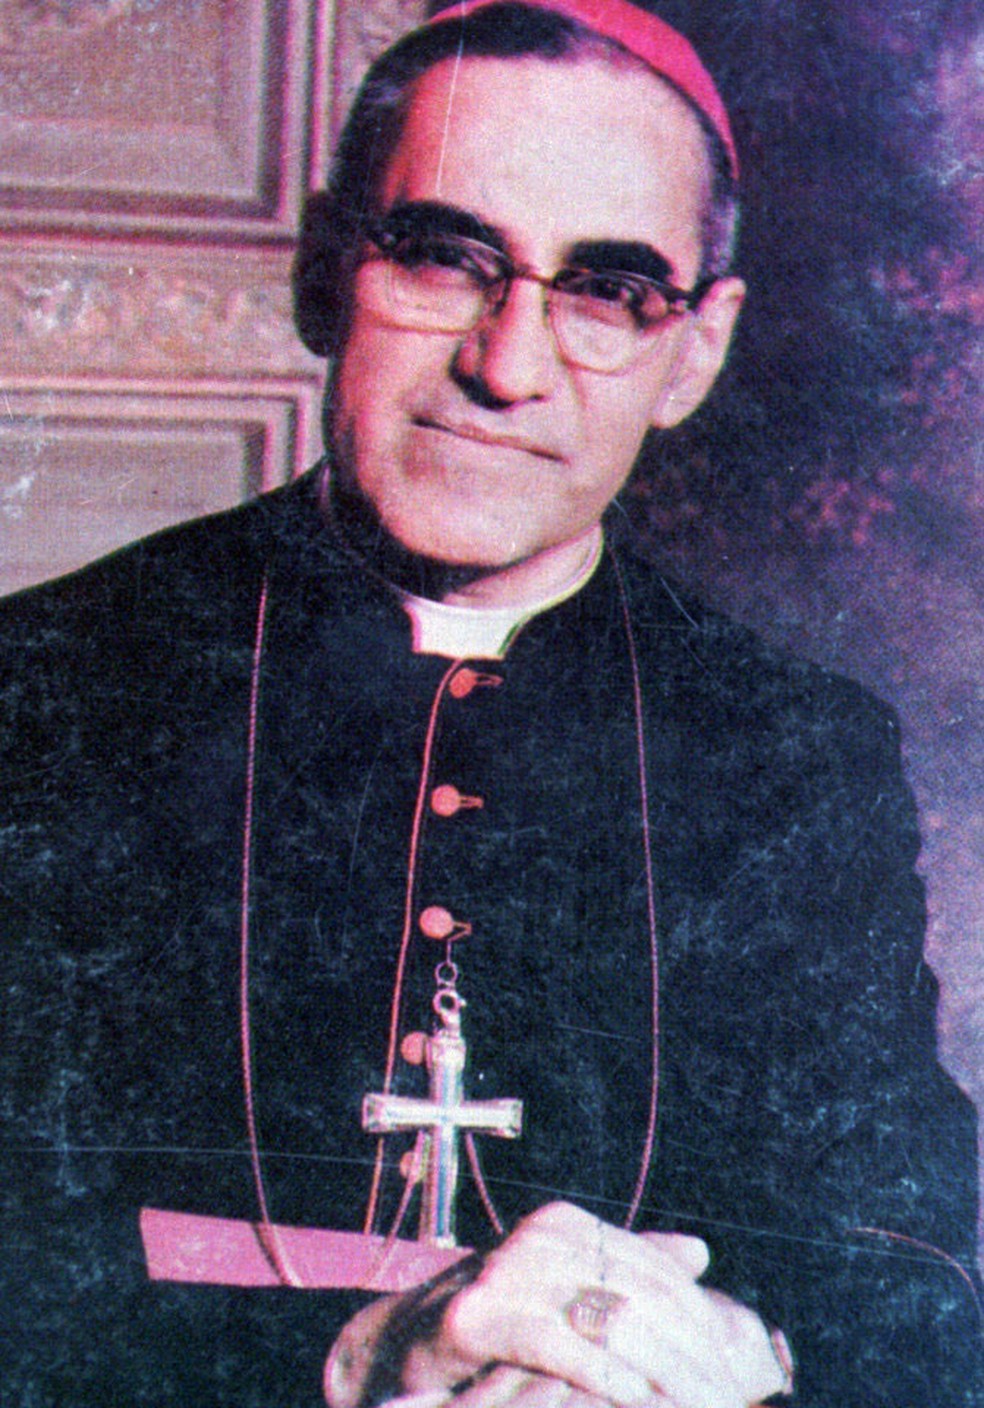 arcebispo salvadorenho Óscar Romero, em imagem de arquivo  — Foto: Associated Press